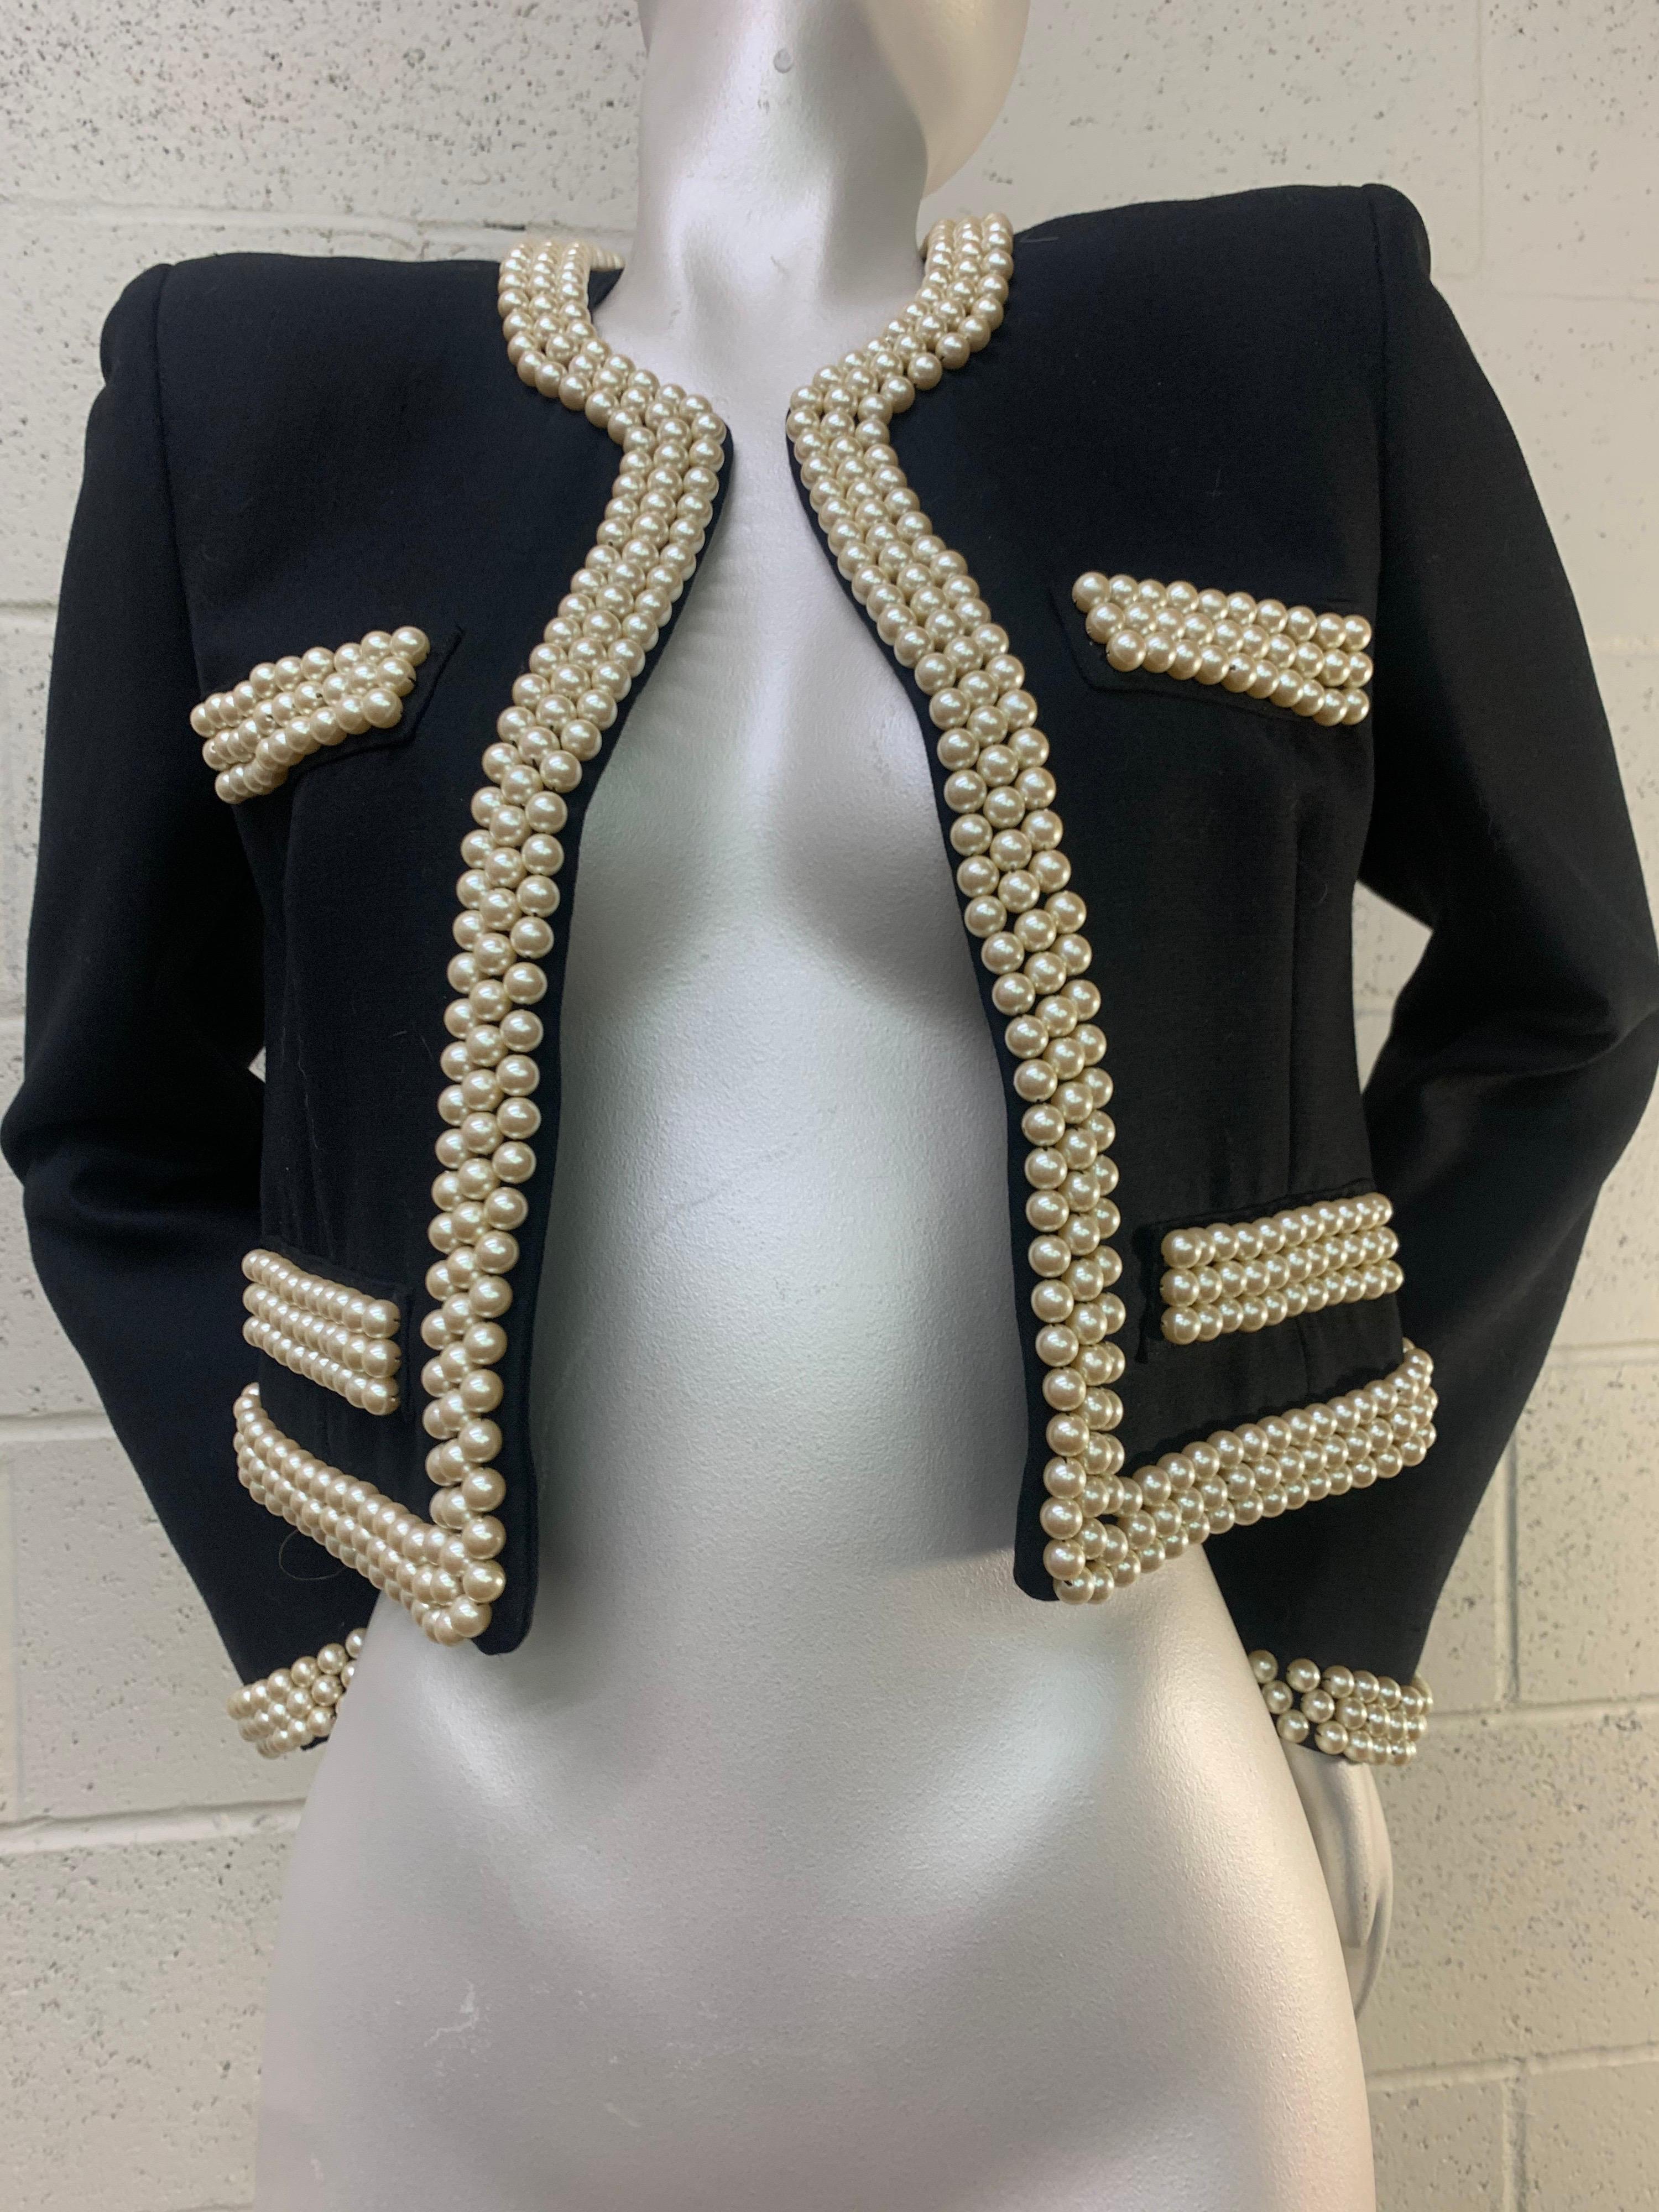 1980 Moschino Couture Veste courte noire de style Chanel avec trois rangées de perles cloutées : Entièrement doublée. Pas de fermeture. Taille 6